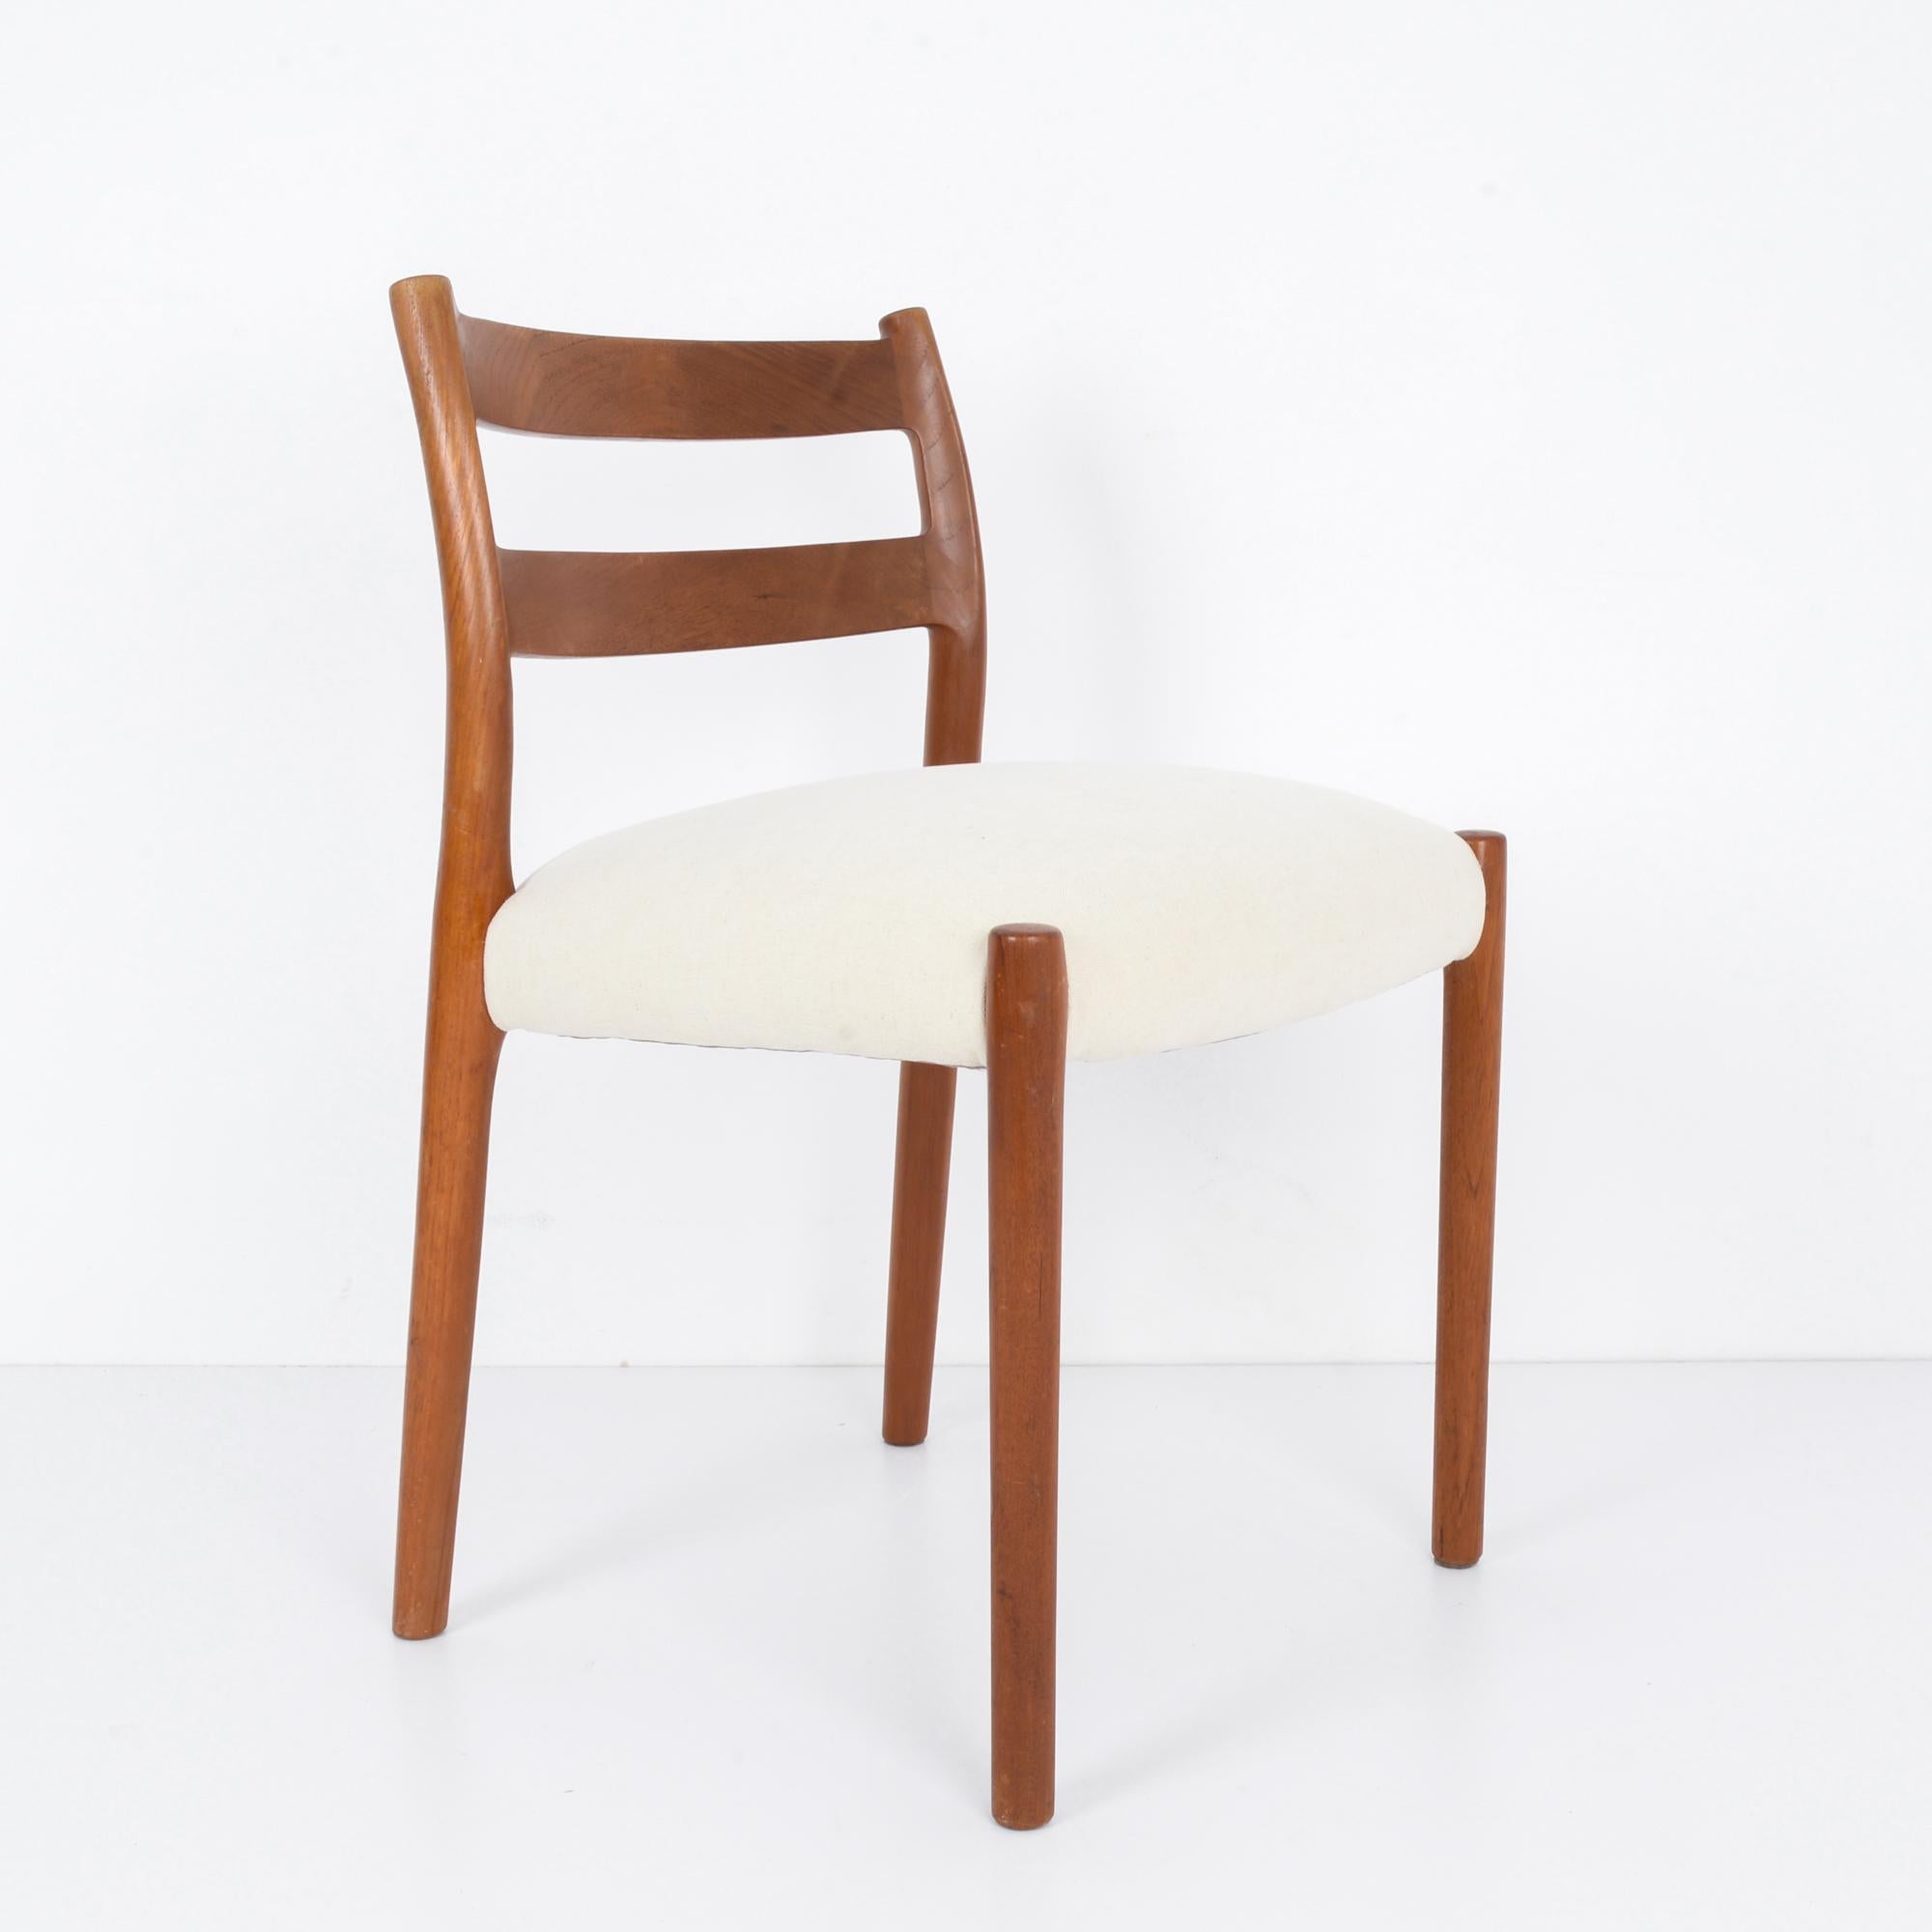 In der innovativen Designlandschaft der 1960er Jahre in Dänemark verkörpert dieser Holzstuhl mit gepolsterter Sitzfläche die schlichte Raffinesse und den ergonomischen Komfort dieser Zeit. Dieses mit viel Liebe zum Detail gefertigte Stück ist der